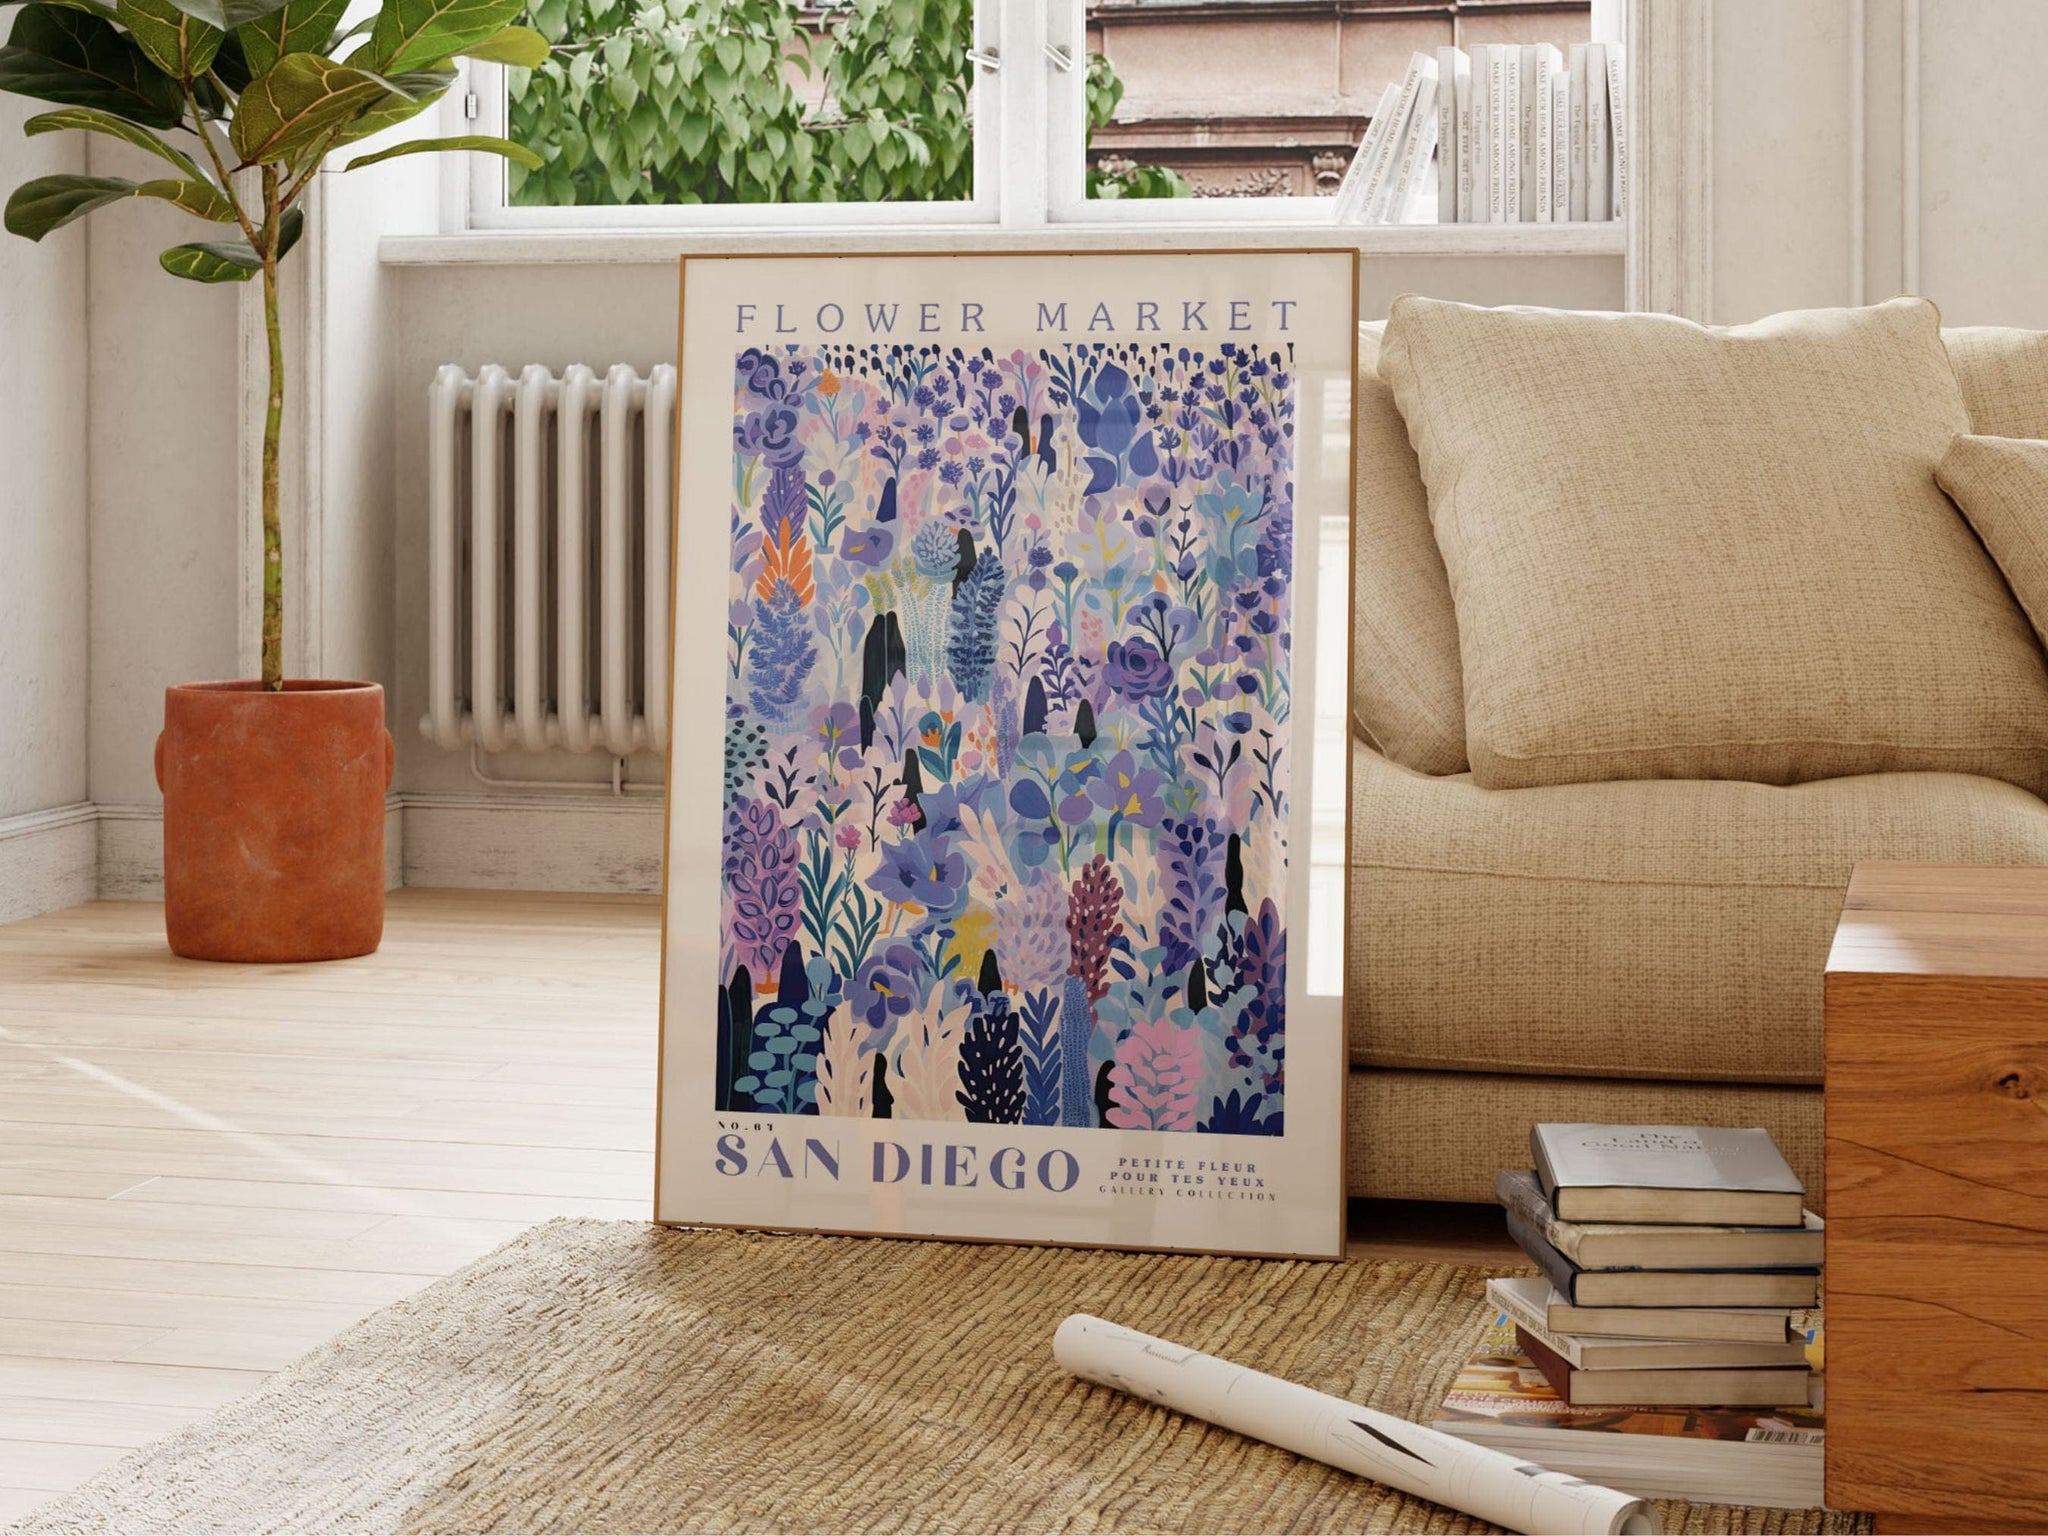 San Diego Flower Market Poster